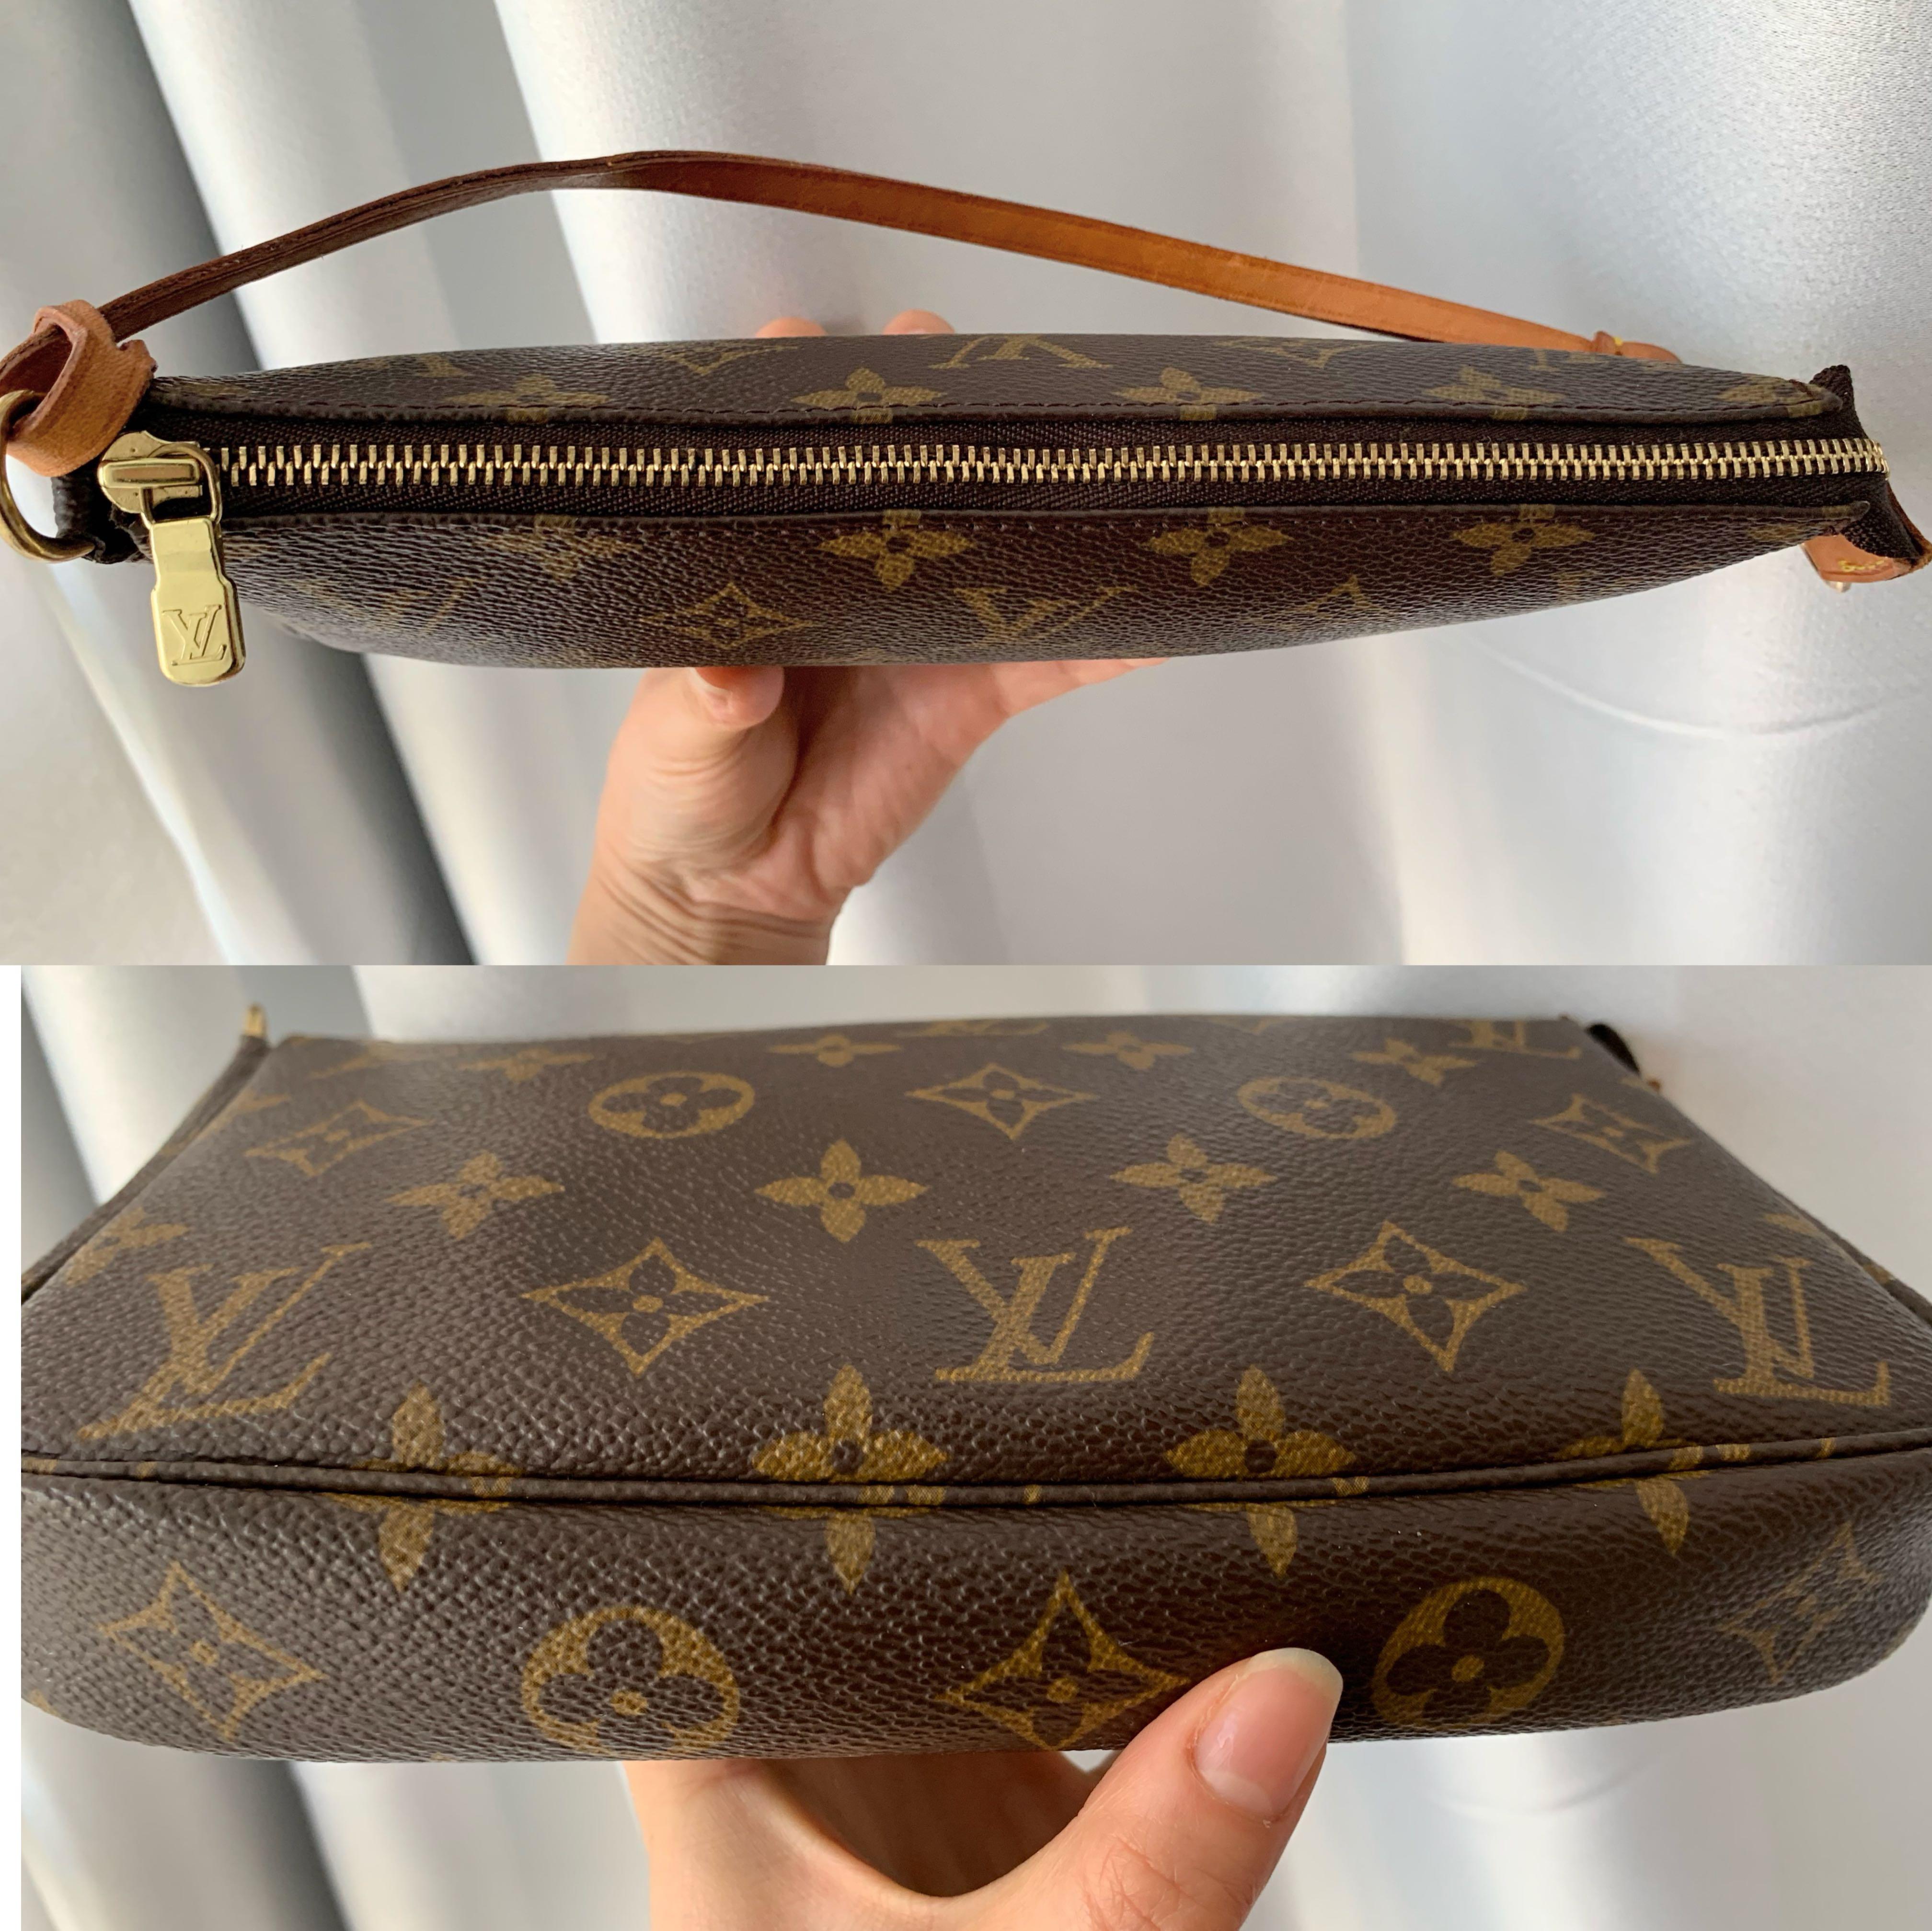 Louis Vuitton Pochette Accessories Vintage Bag #04, Luxury, Bags